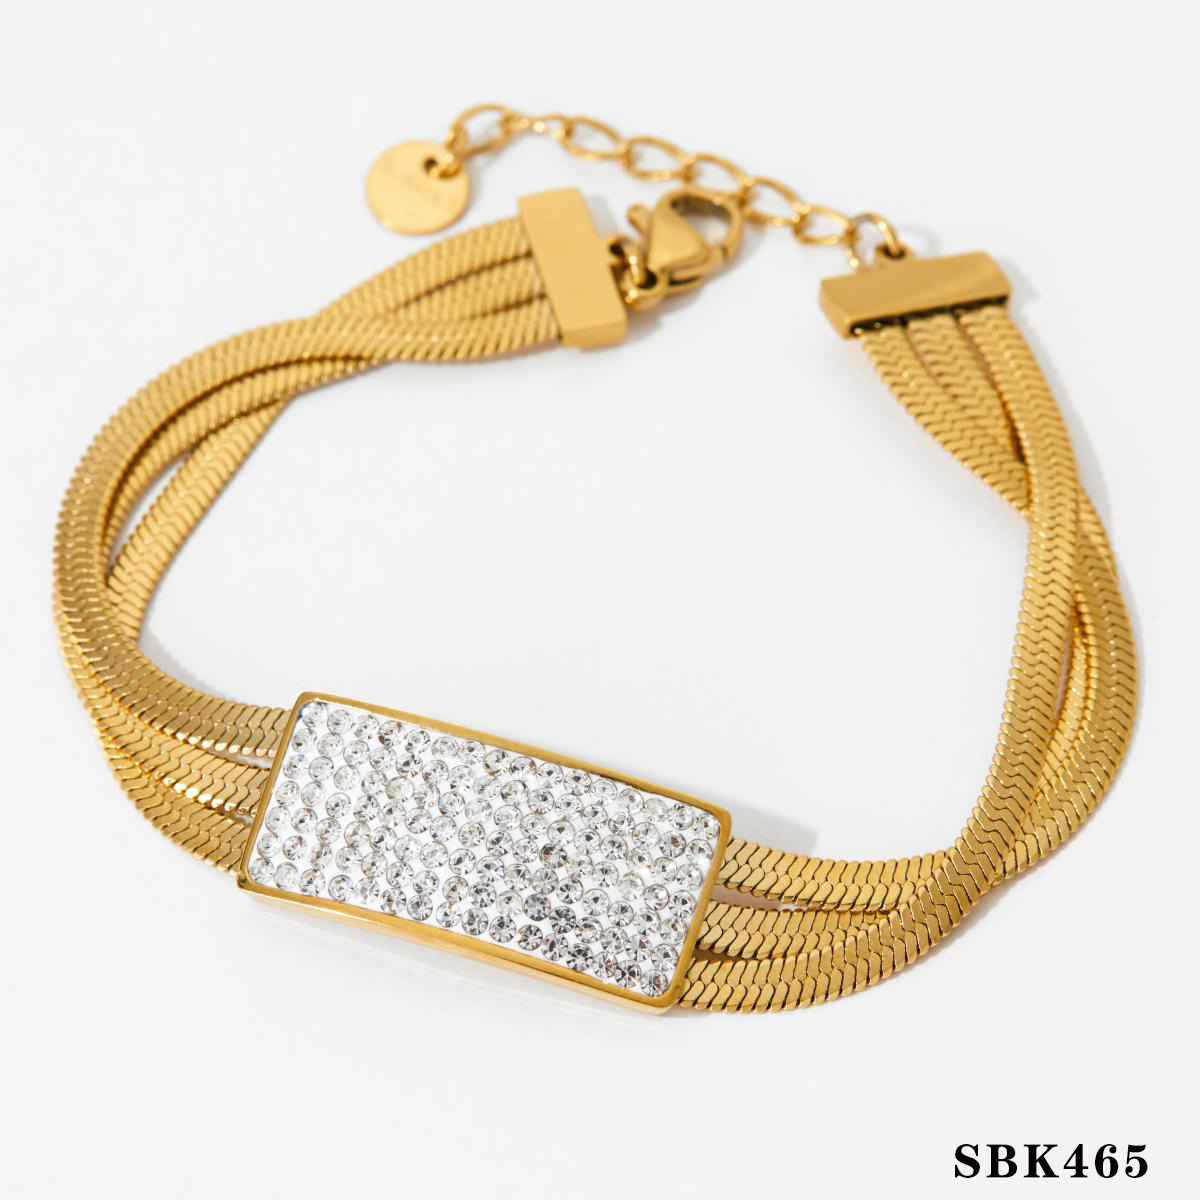 3:Bracelet A gold